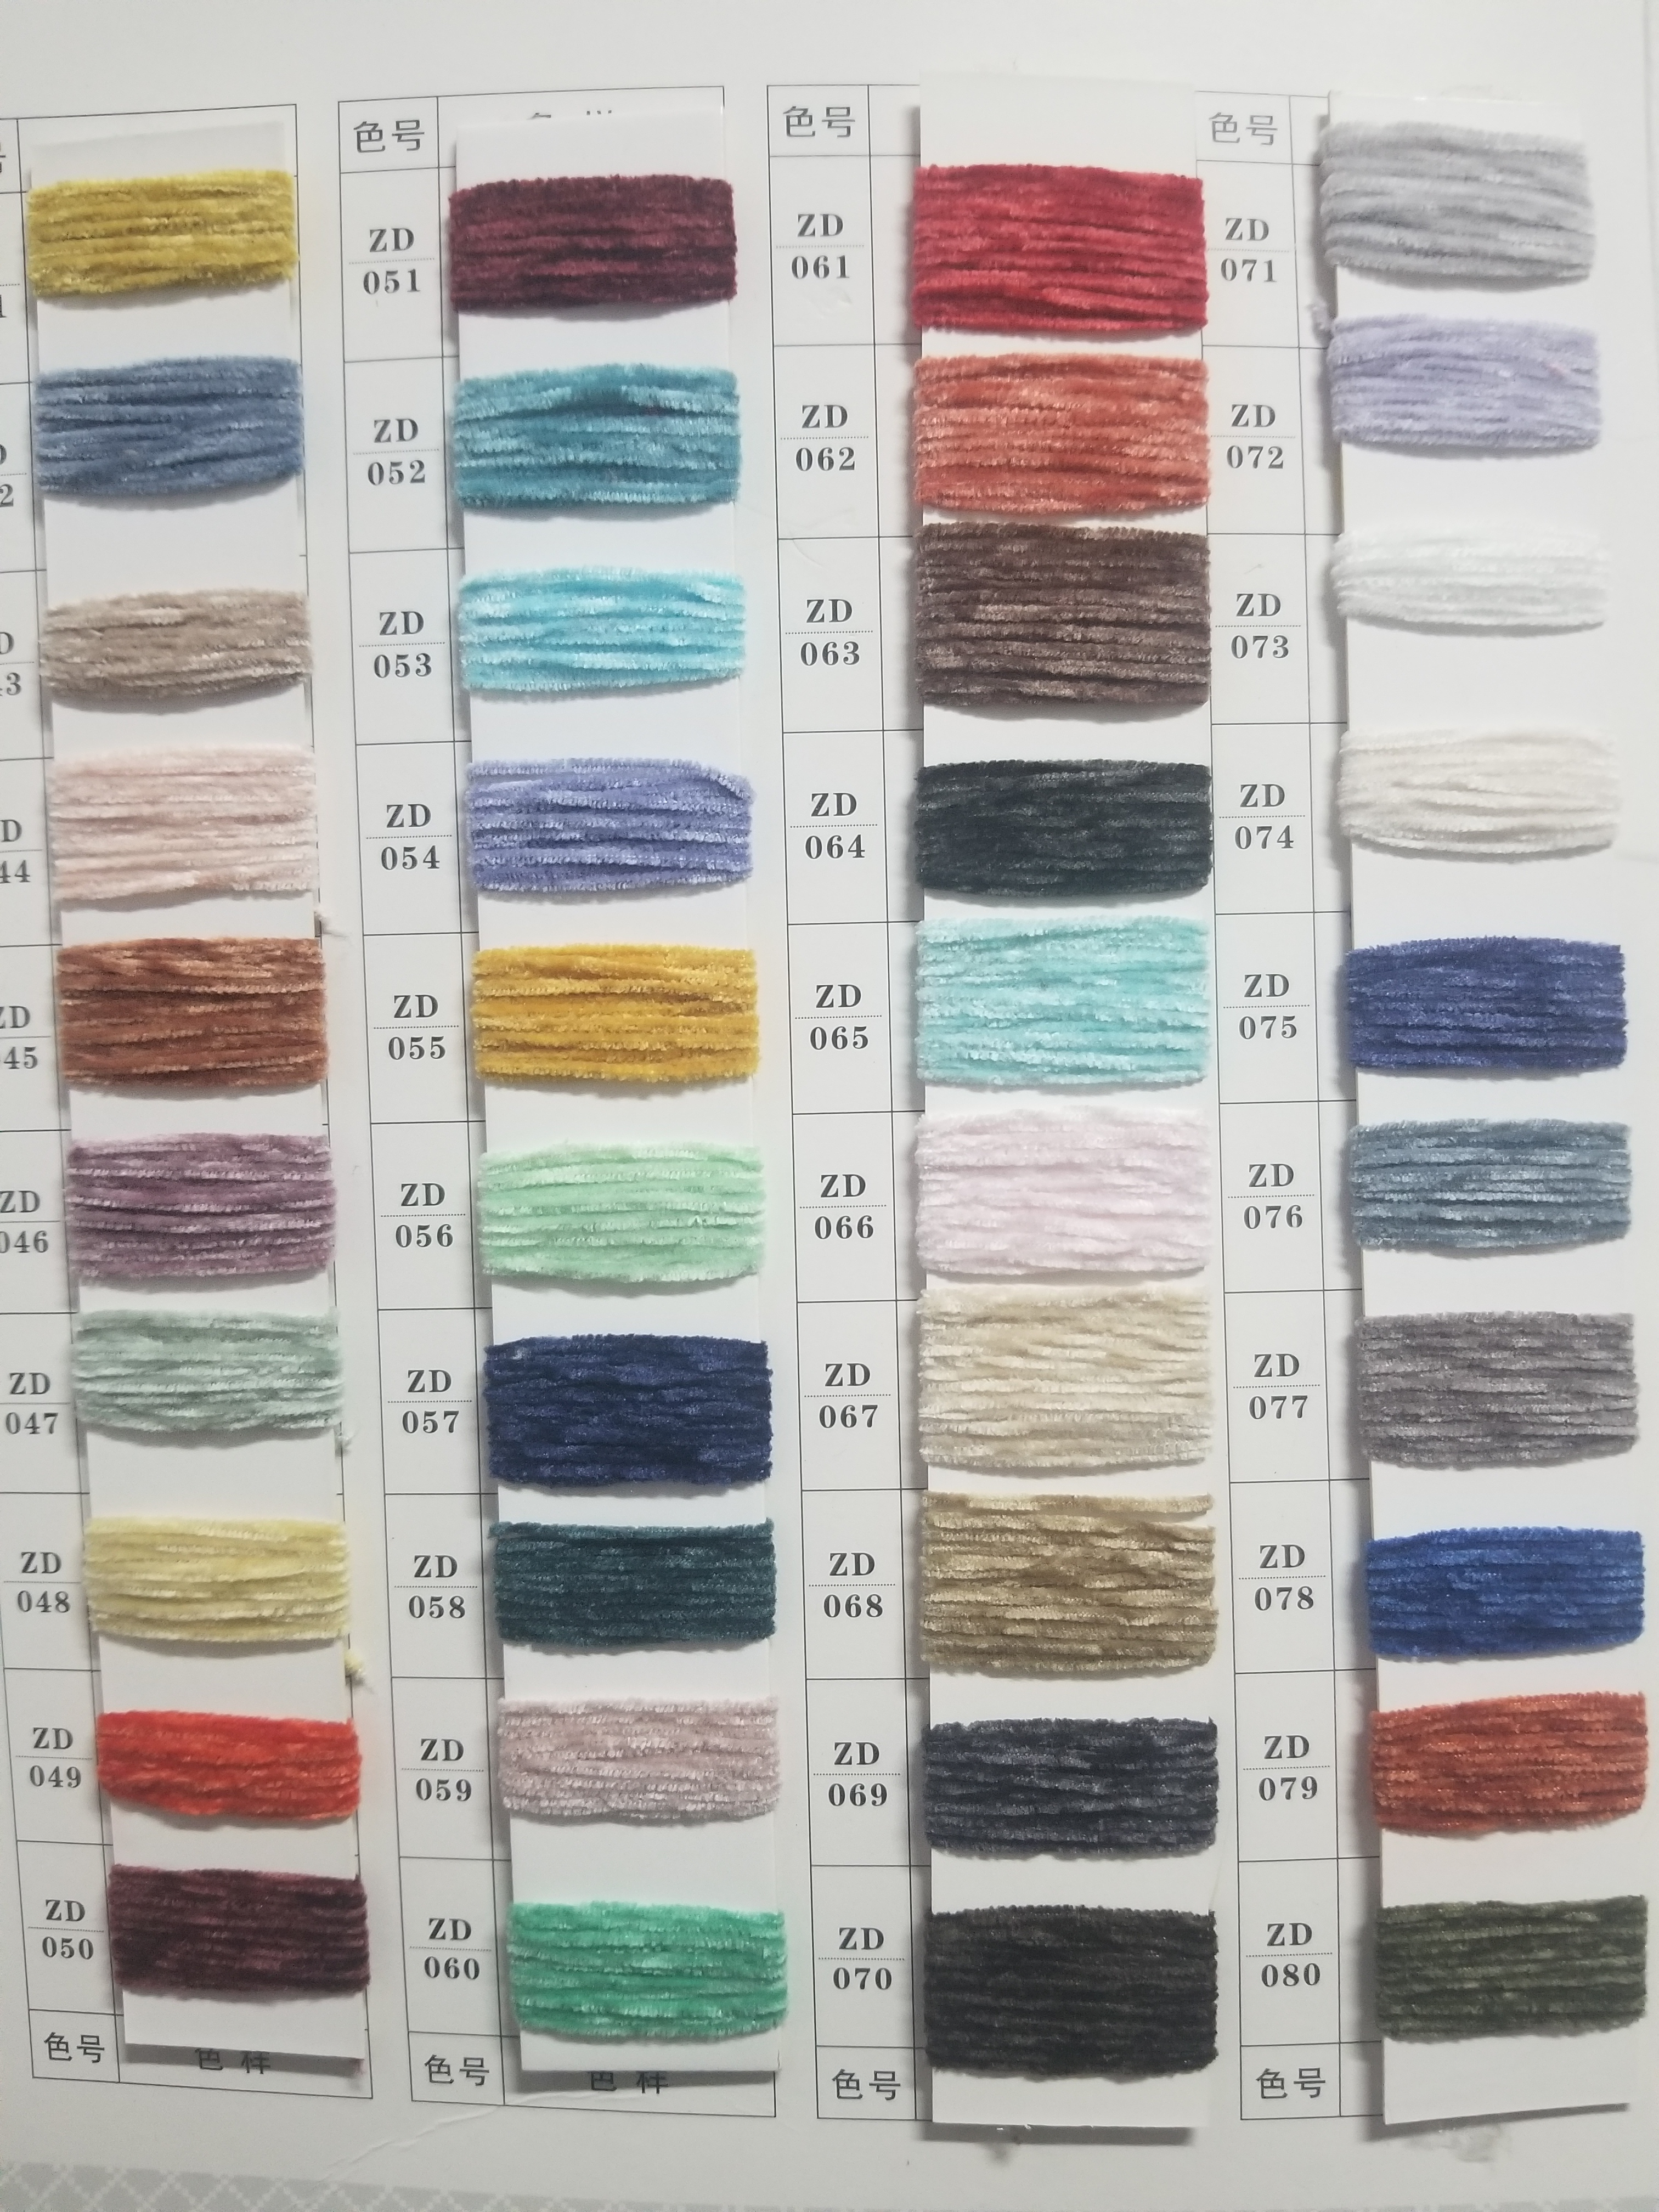 6 NM chenille yarn